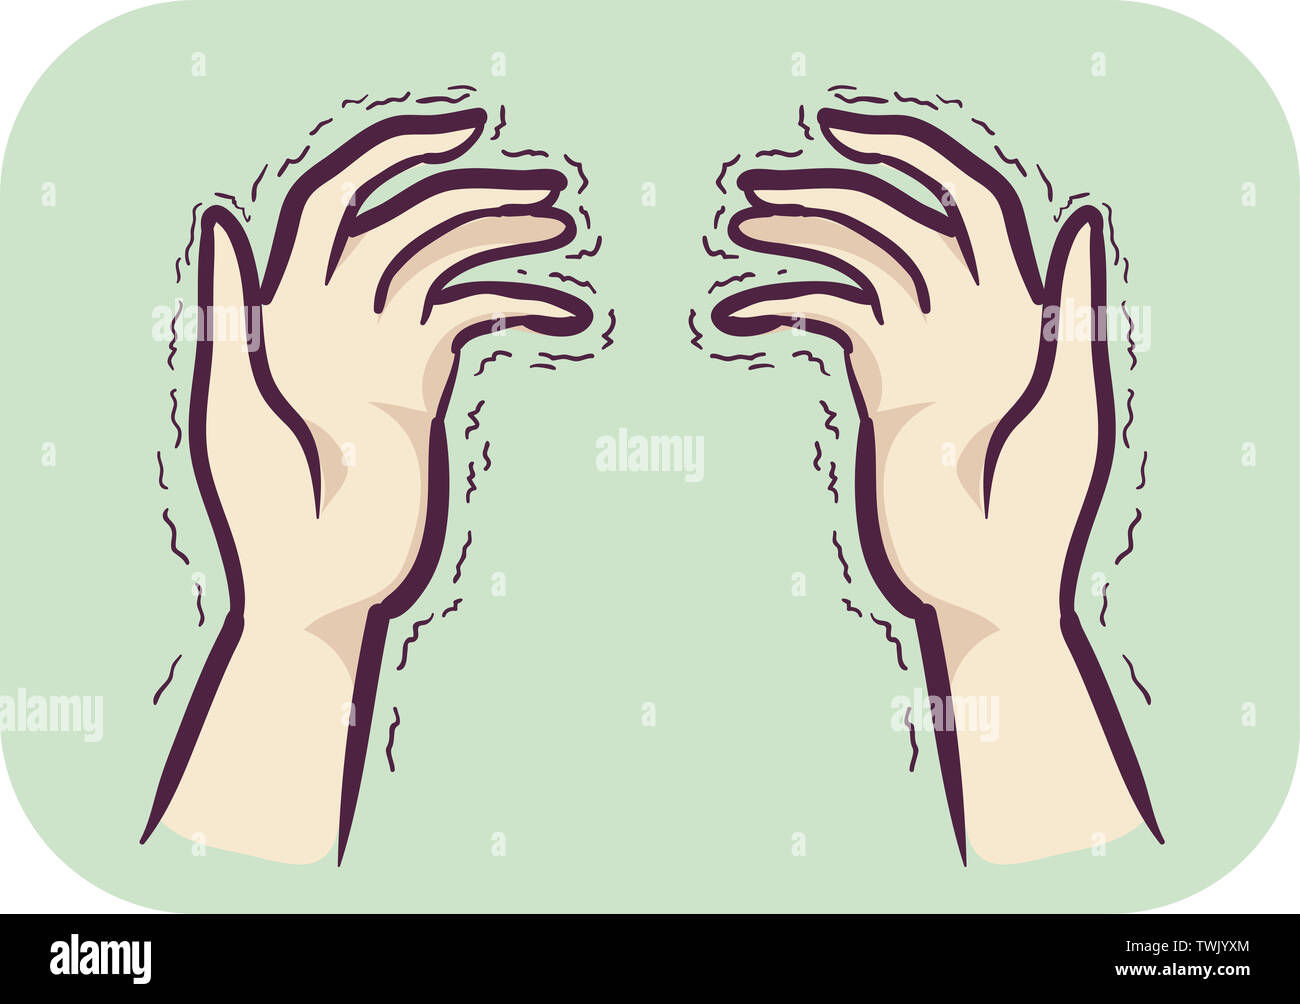 Ilustración de un apretón de manos, mostrando síntomas de temblor esencial  Fotografía de stock - Alamy